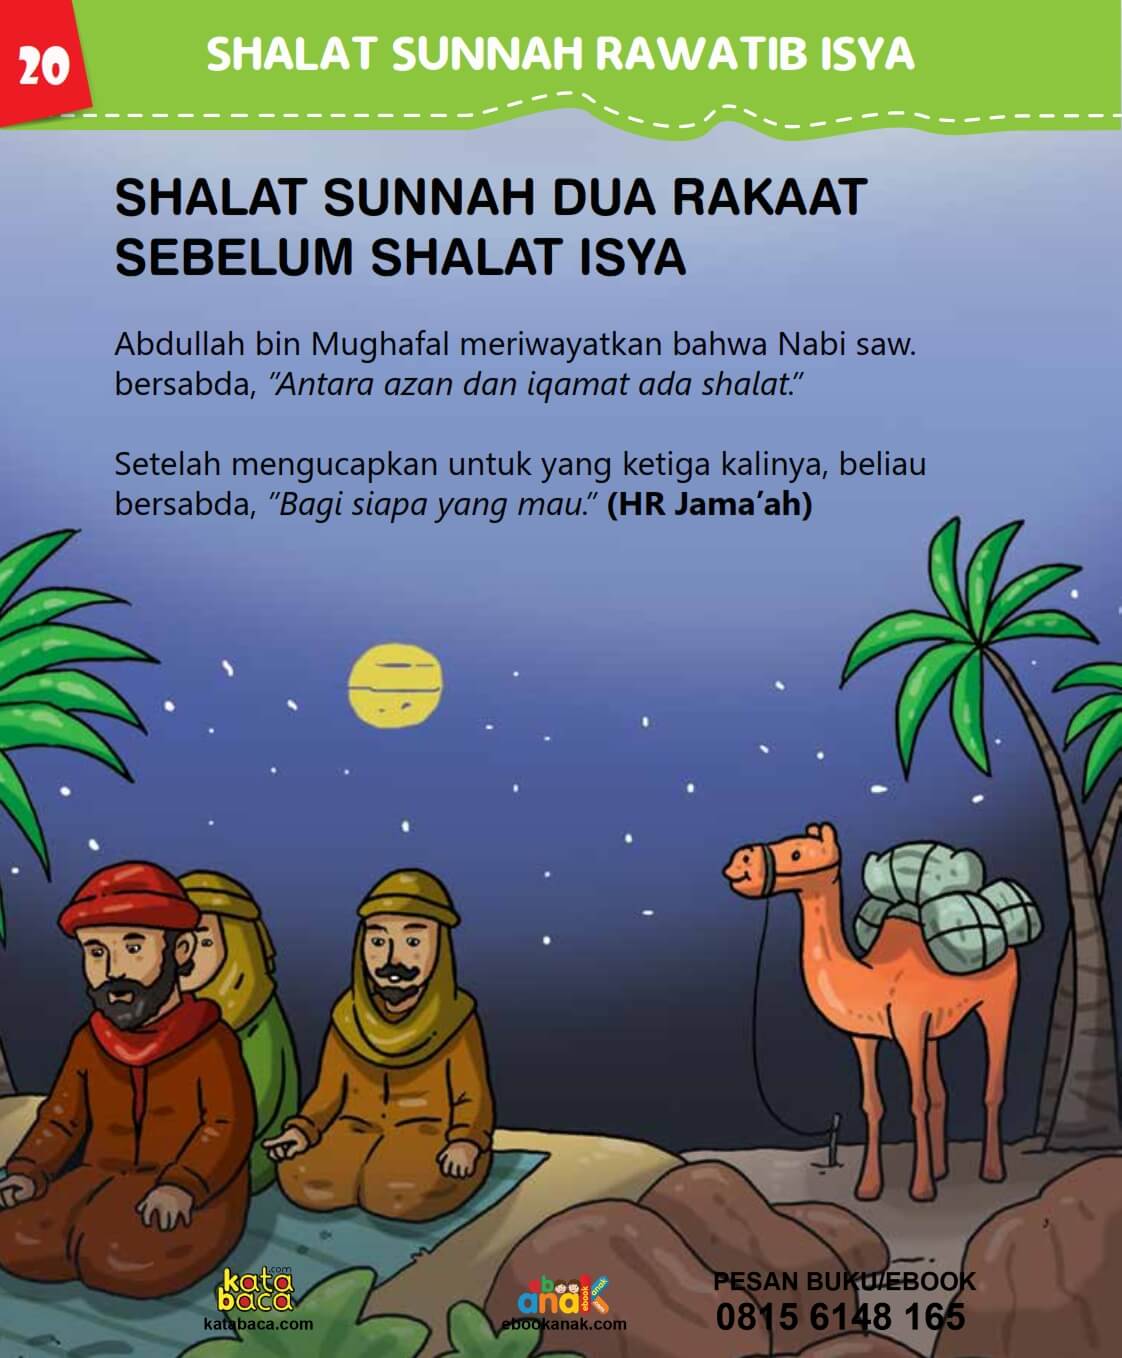 Shalat Sunnah Dua Rakaat Sebelum Shalat Isya